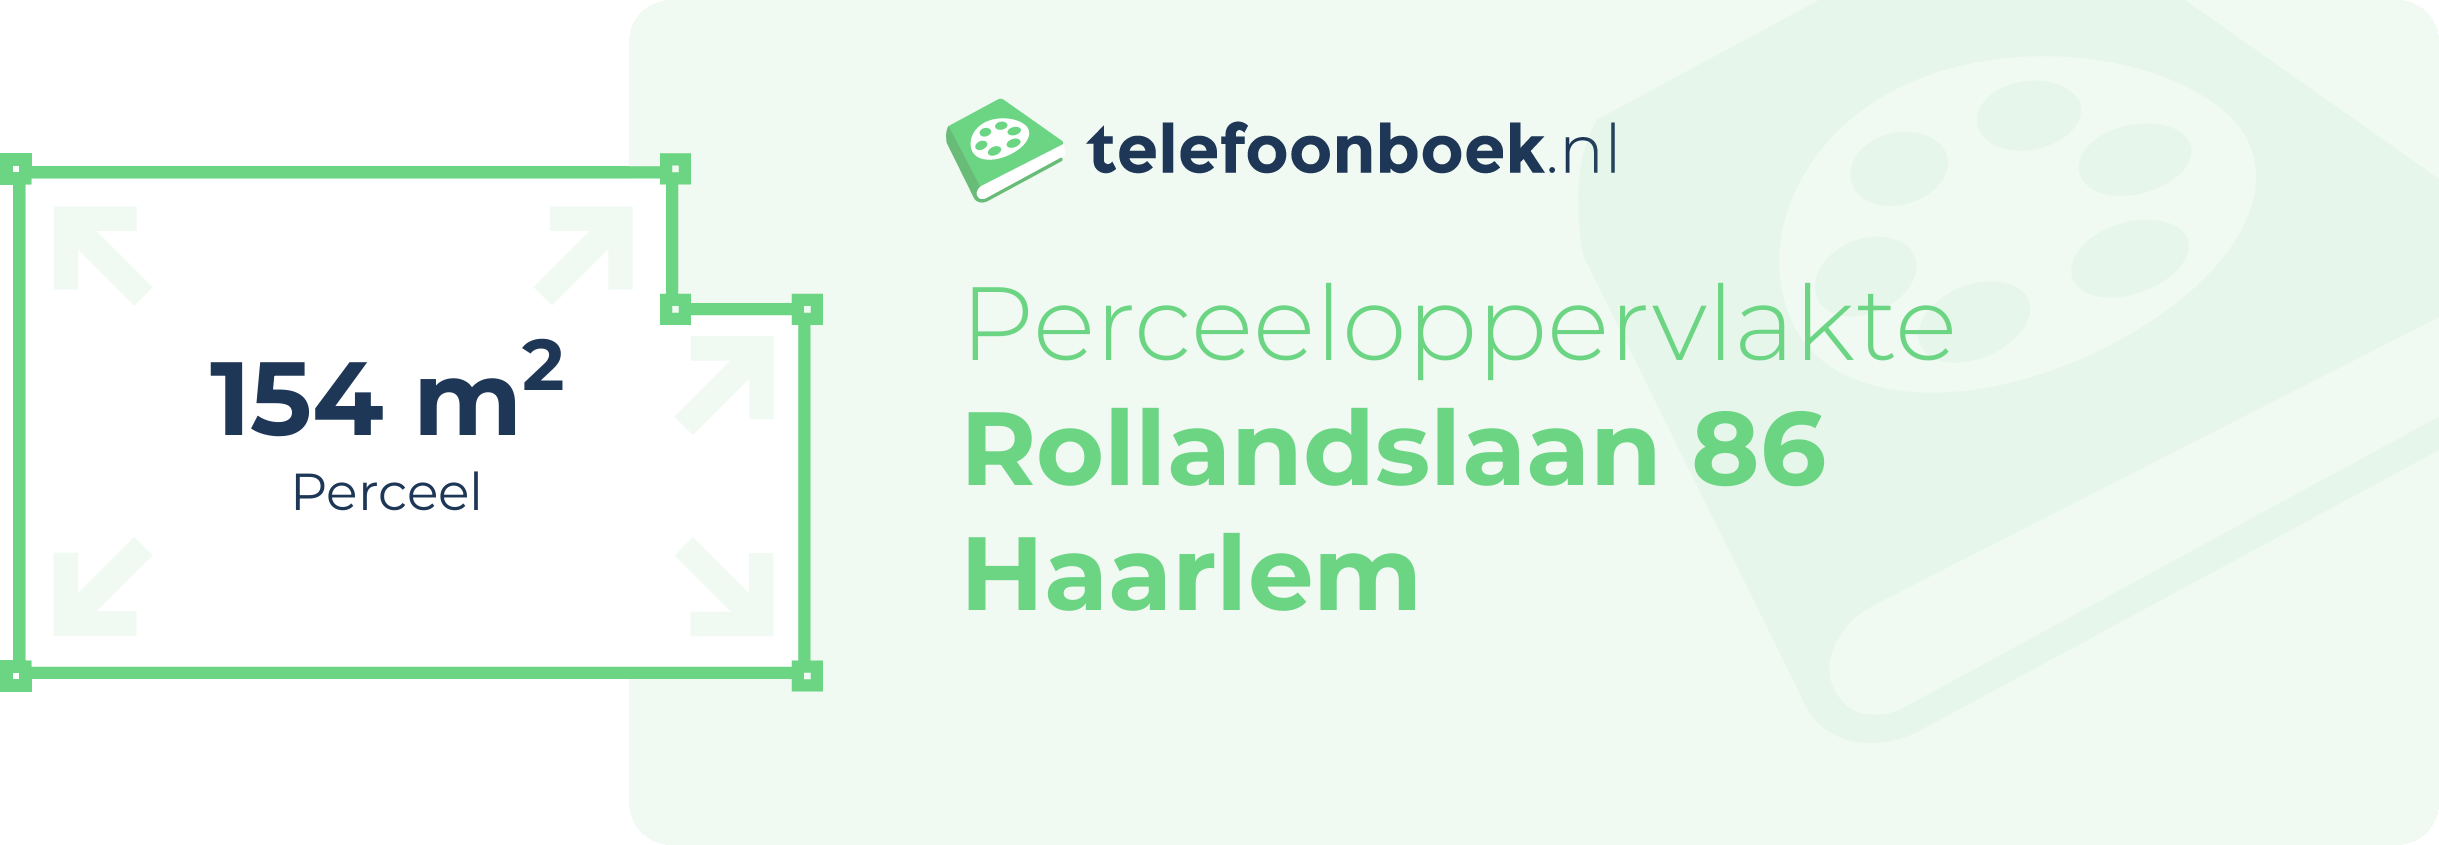 Perceeloppervlakte Rollandslaan 86 Haarlem